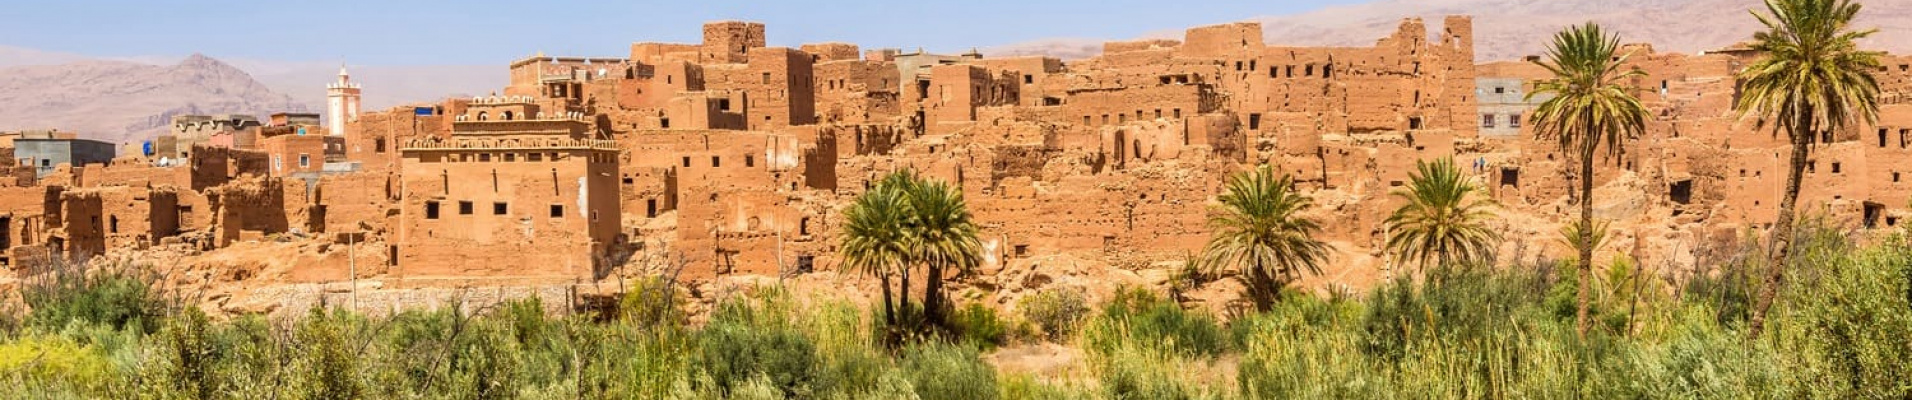 morocco-tinghir